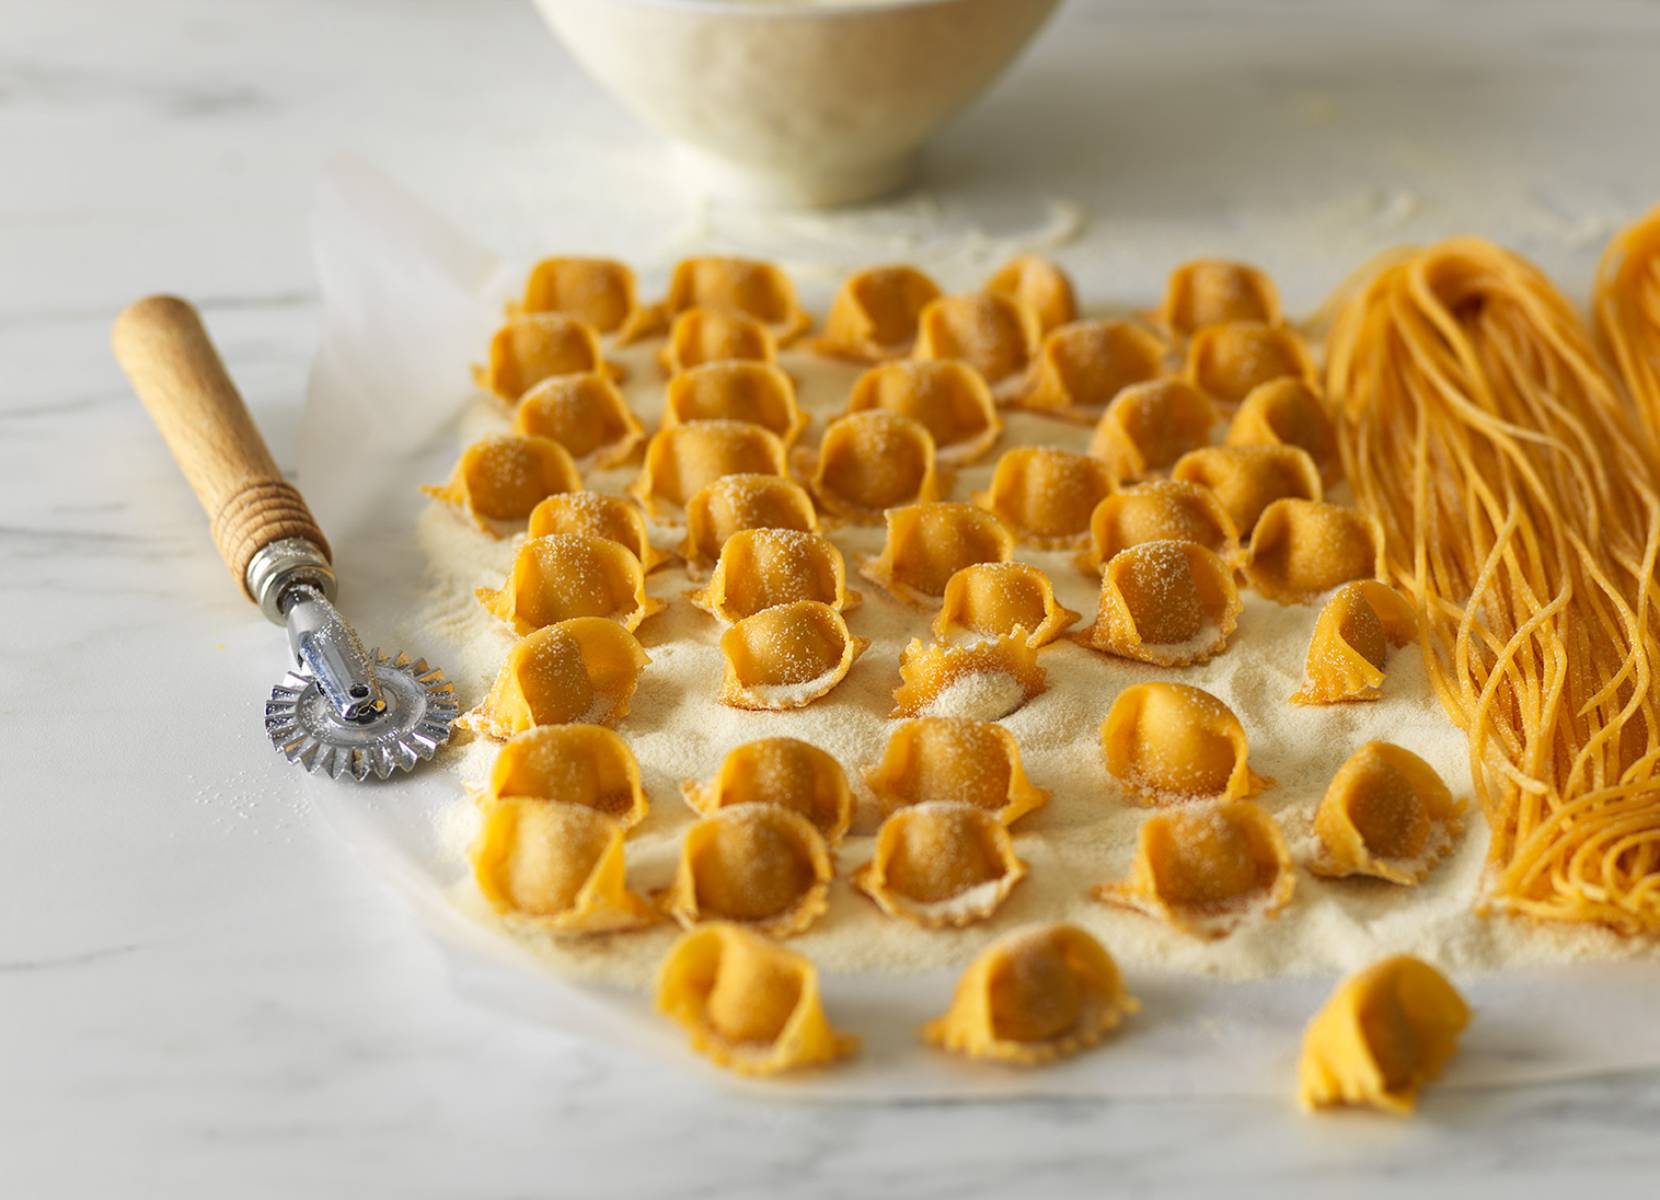 amare cut up ravioli and pasta